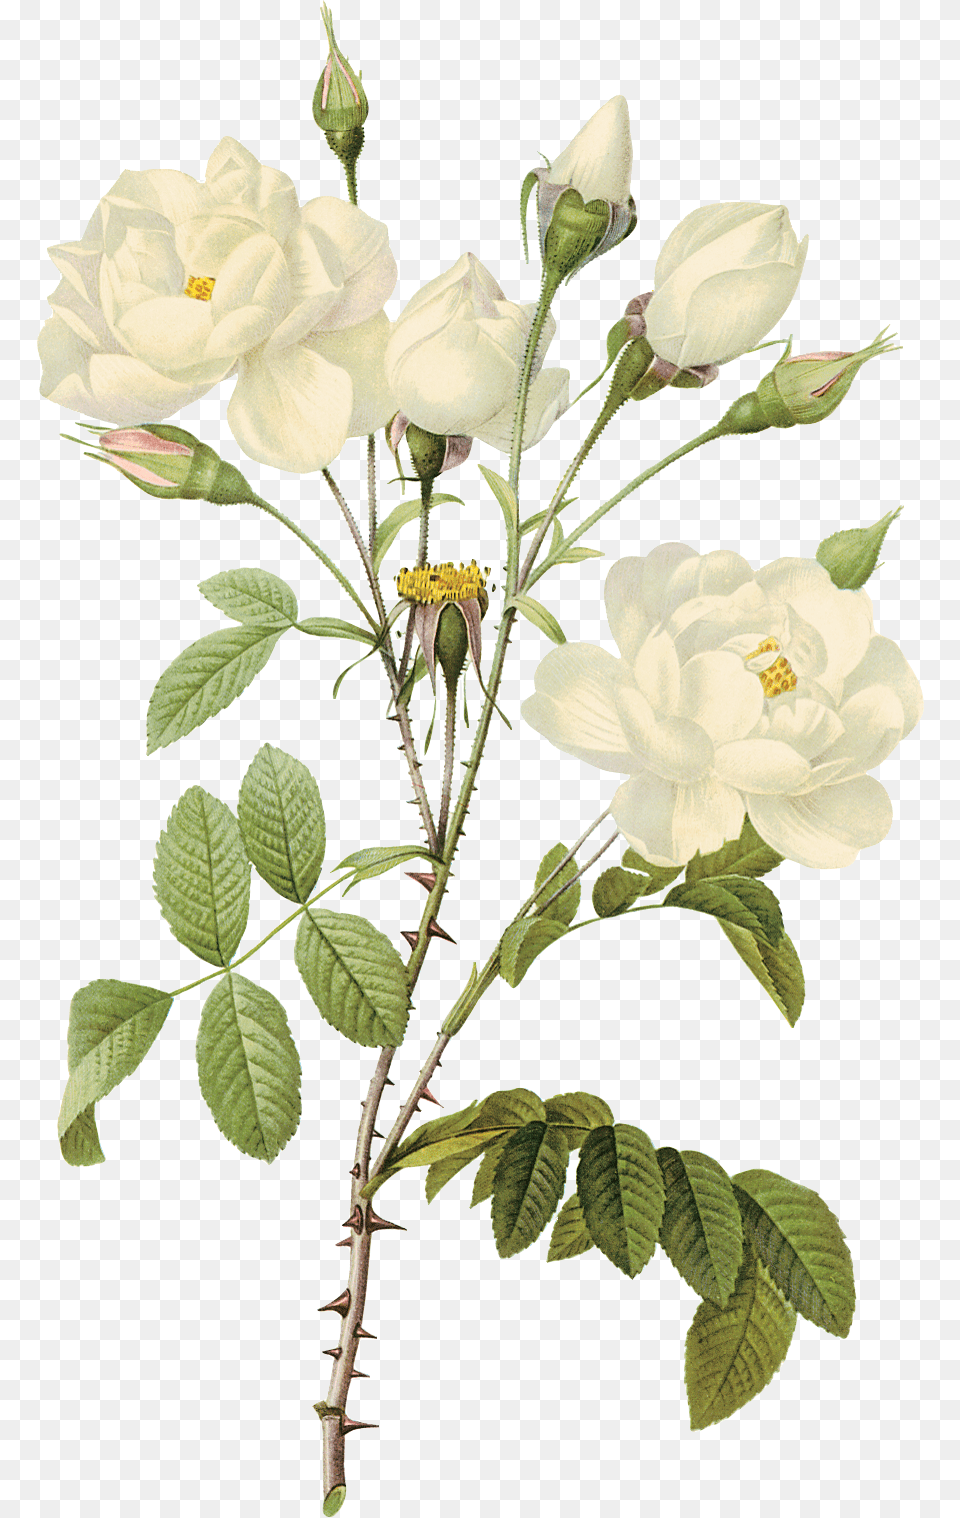 White Roses, Flower, Leaf, Plant, Rose Png Image